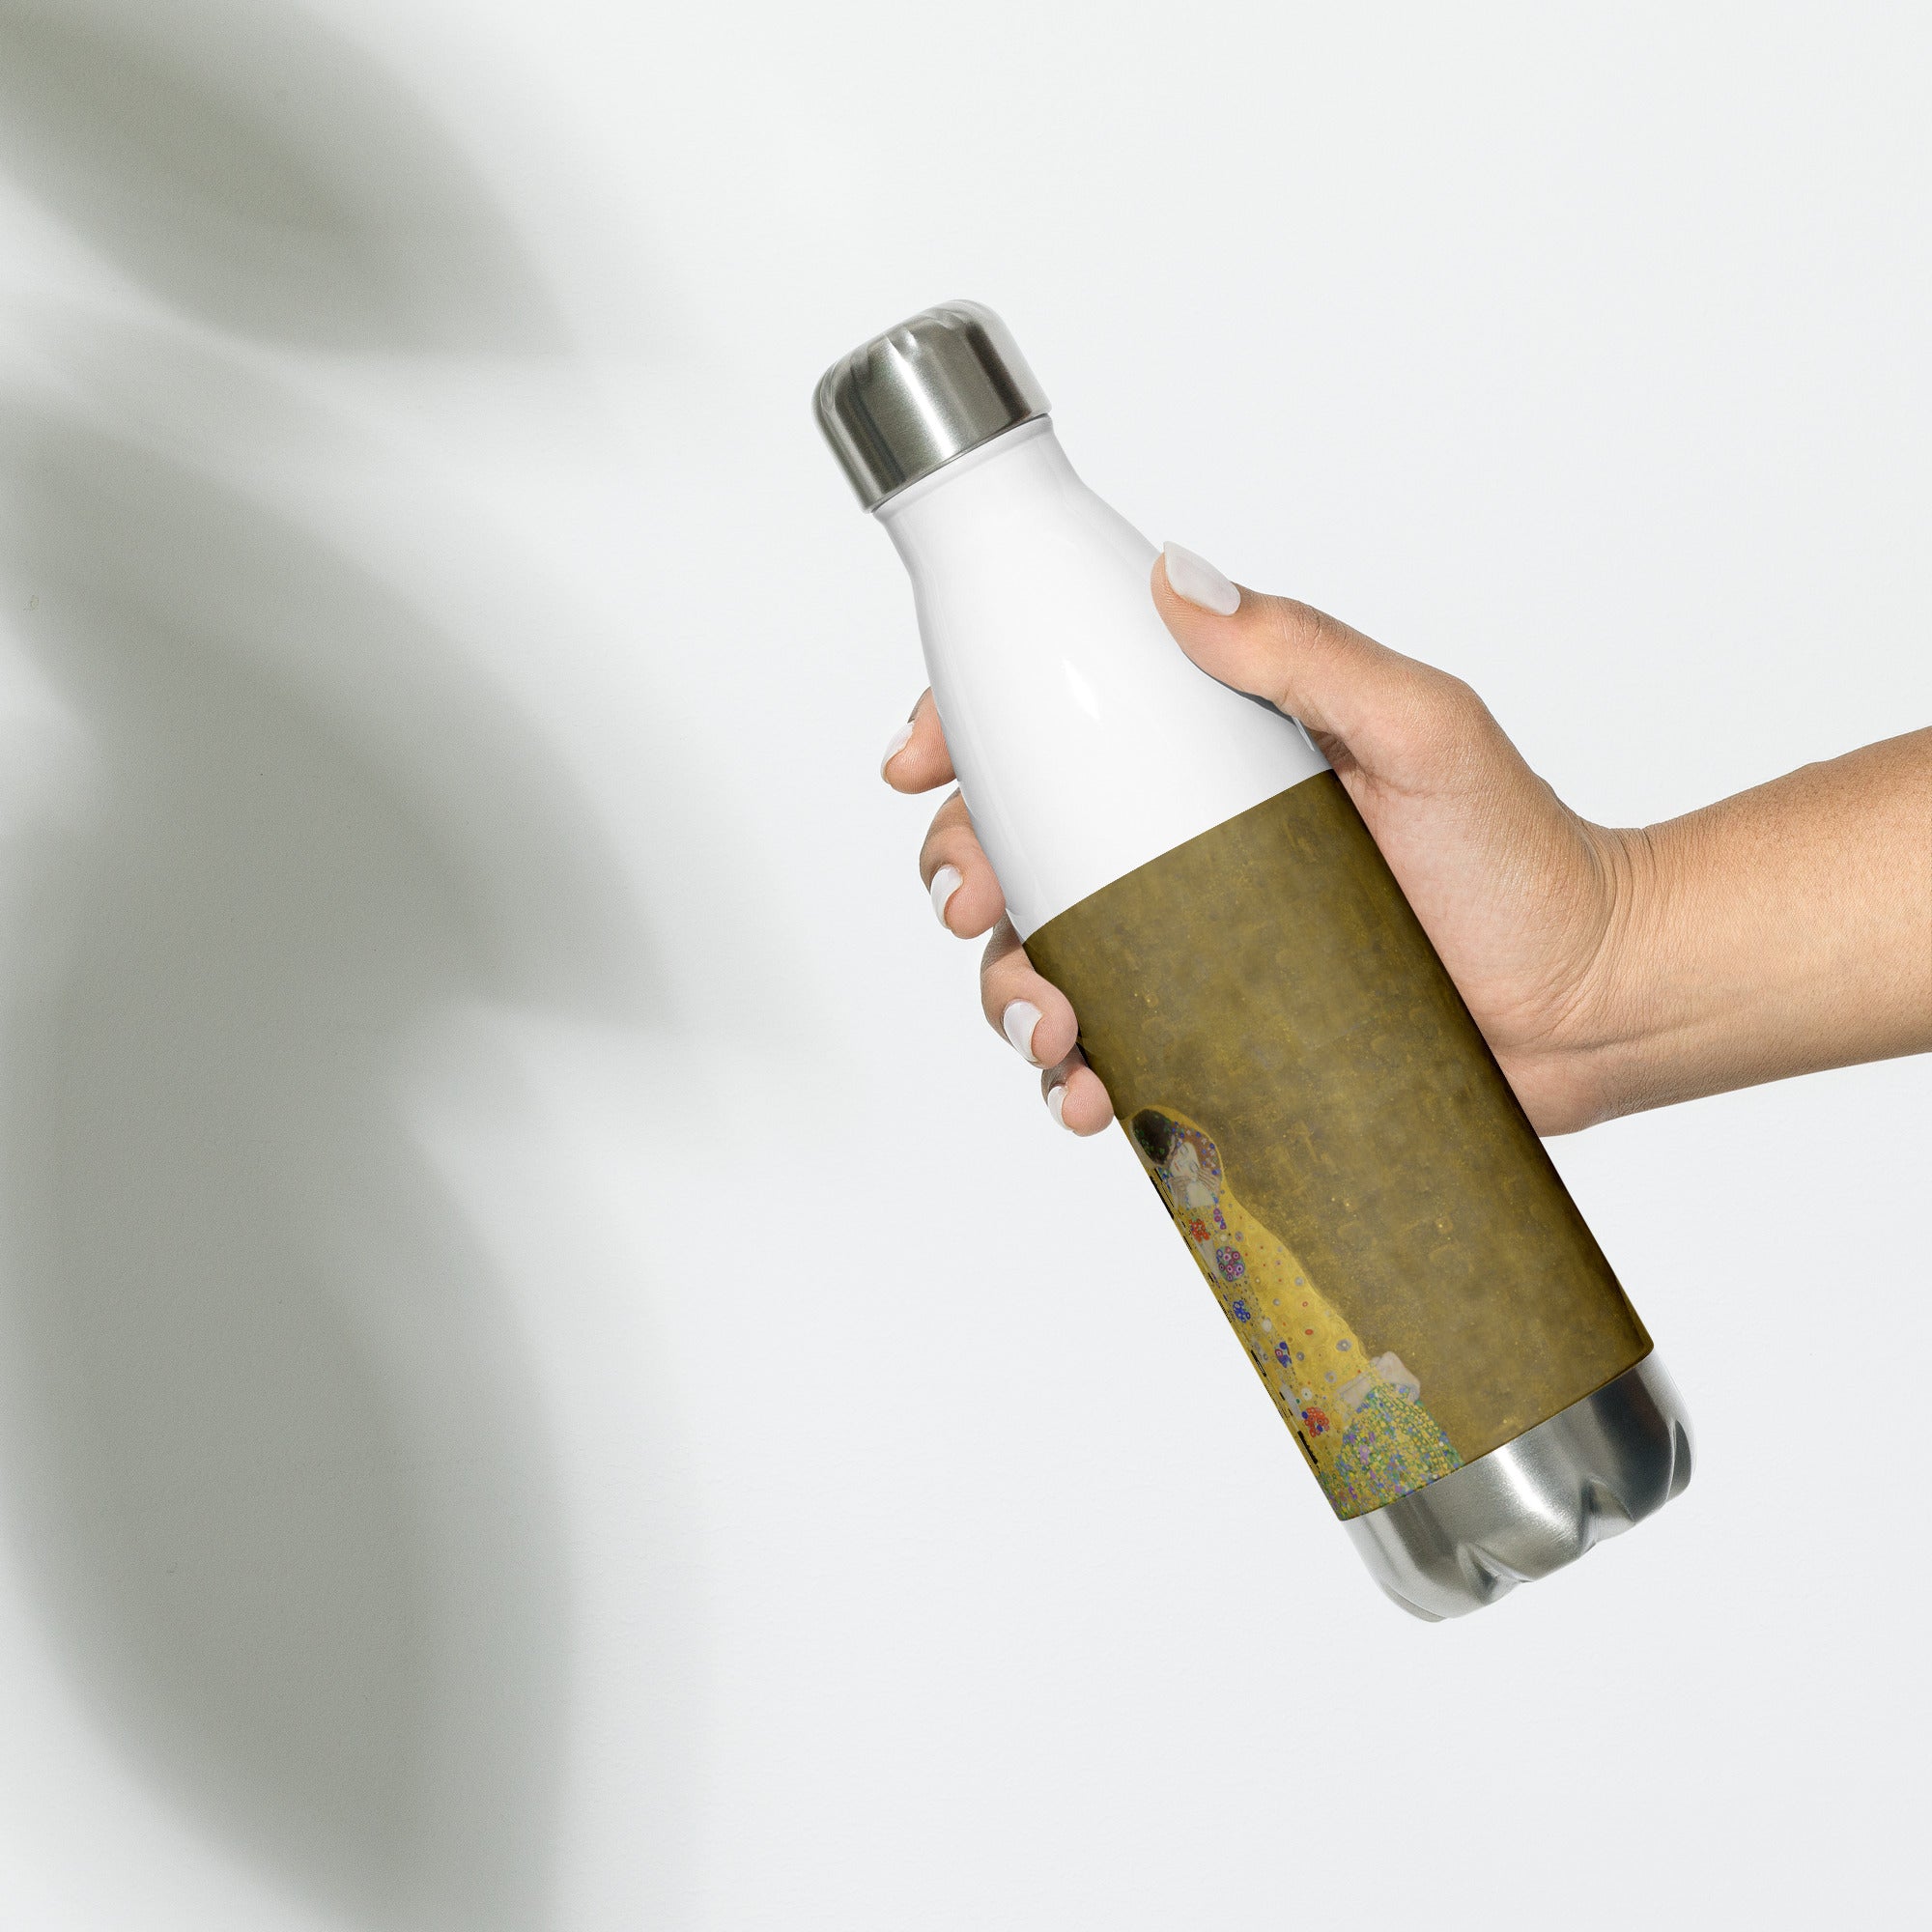 Gustav Klimt 'The Kiss' Famous Painting Water Bottle | Stainless Steel Art Water Bottle